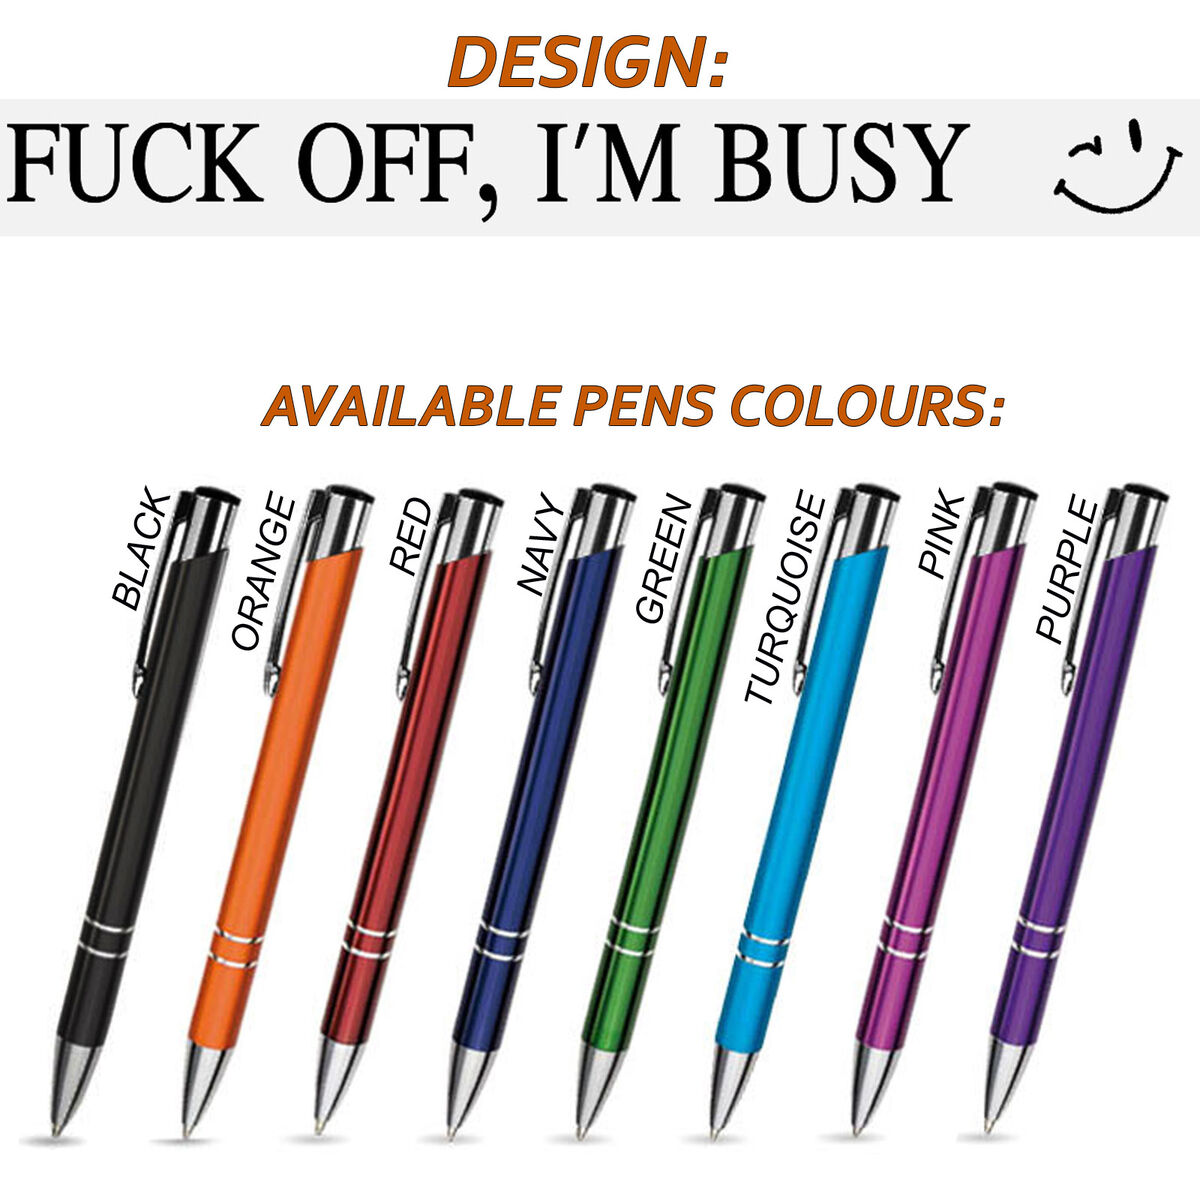 Sweary Fuck Pens Cussing Pen Gift Set 5 Swear Words Colorful Pens Profanity  Gel Pen Set Funny Pens 